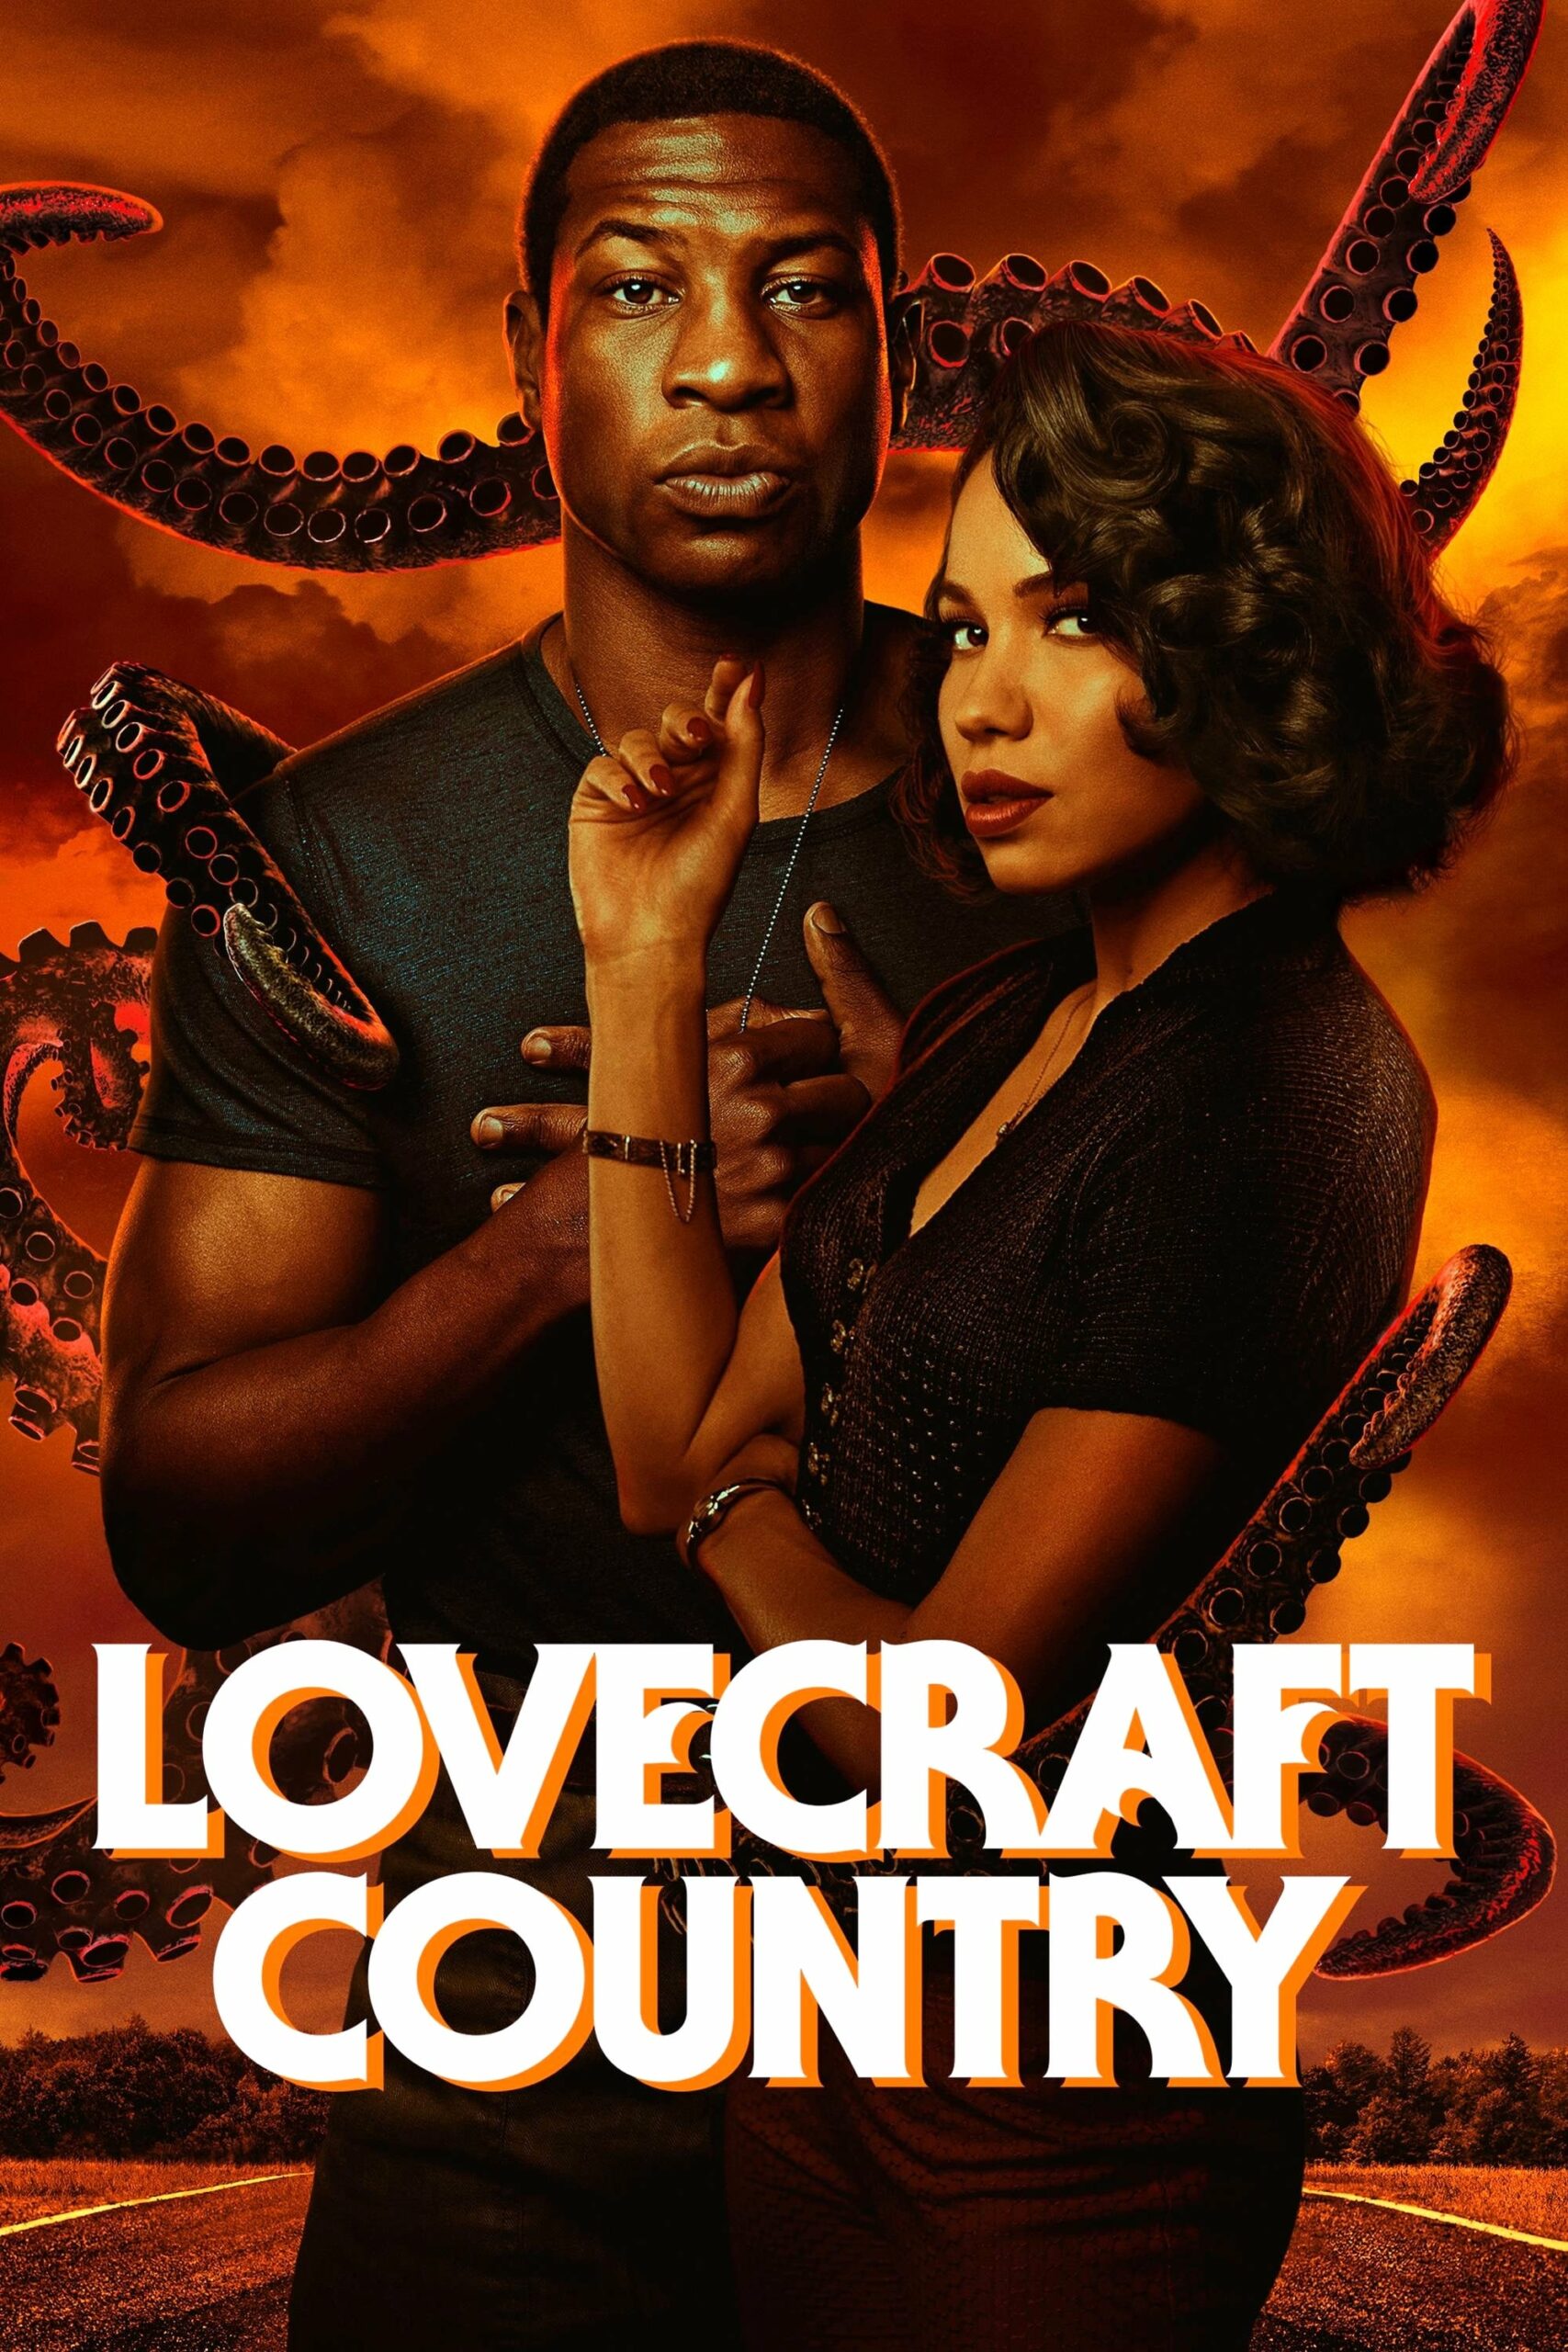 Plakát pro film “Lovecraftova země”